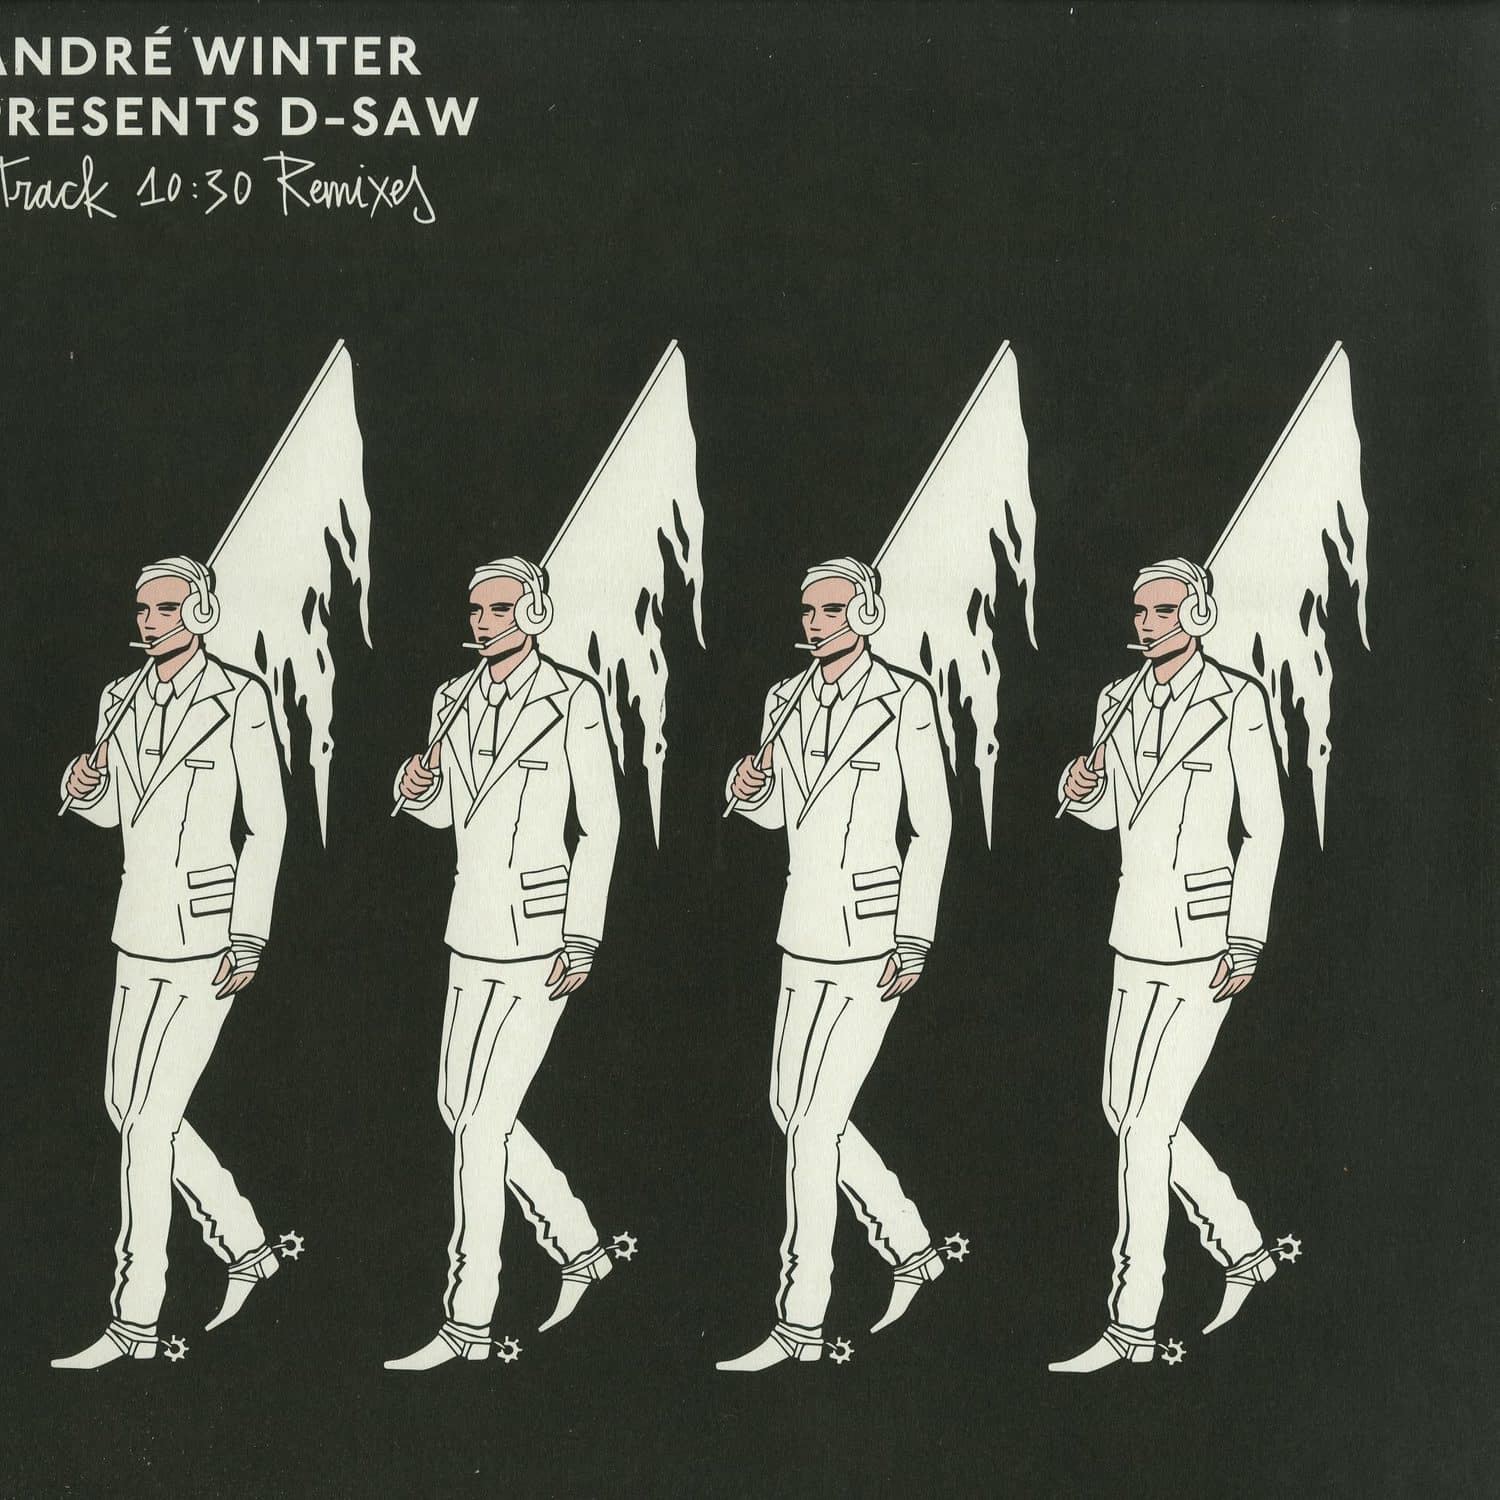 Andre Winter presents D-Saw - TRACK 10:30 - REMIXES 